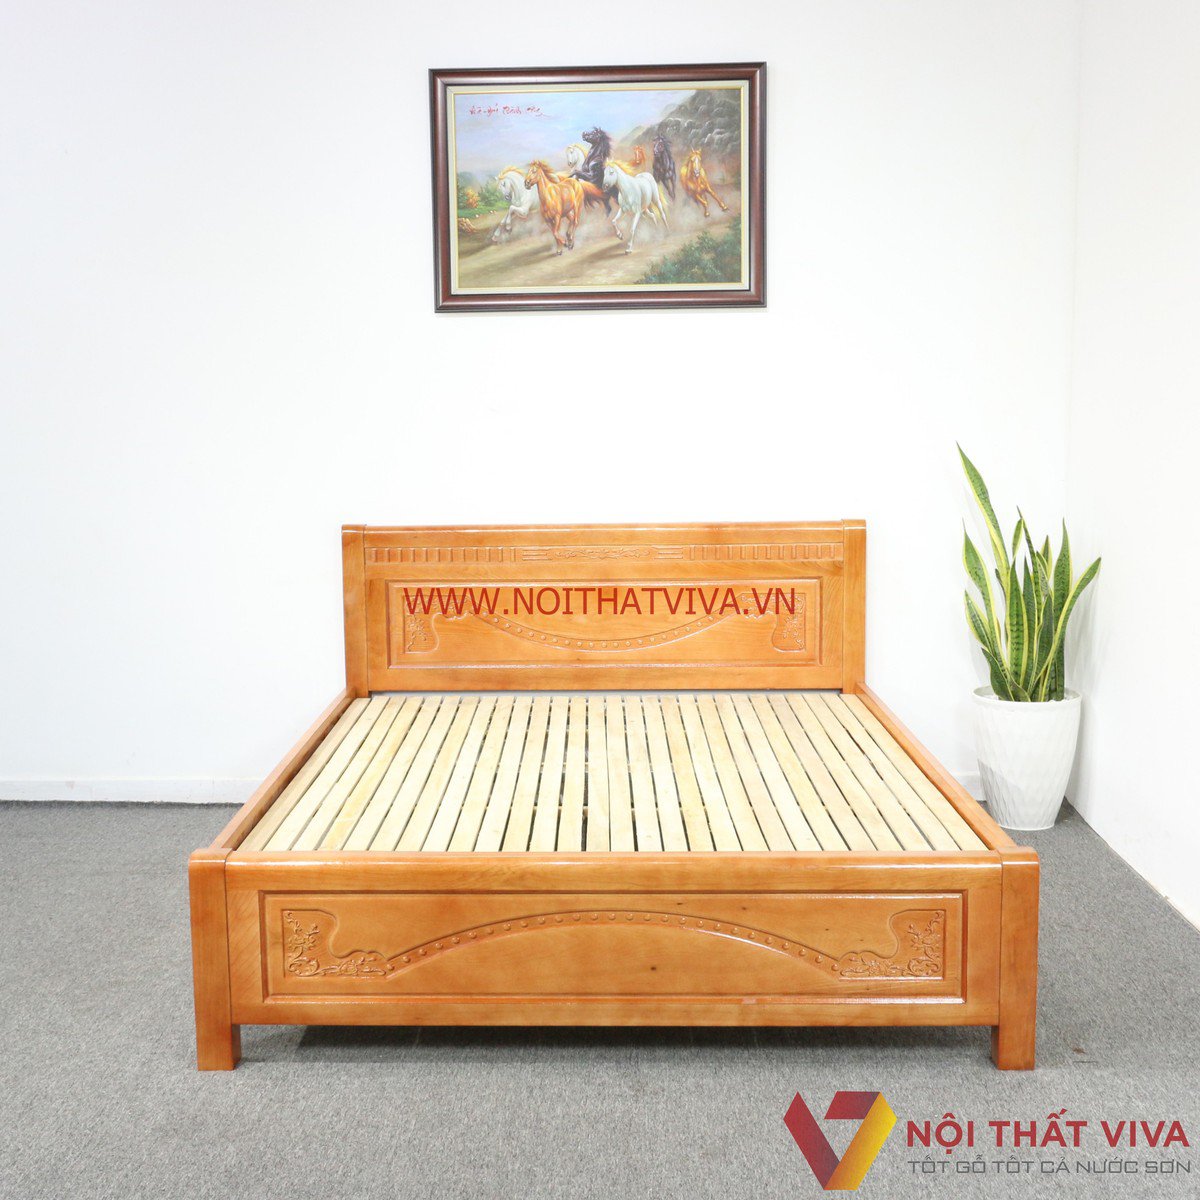 [BST] Những mẫu giường ngủ gỗ đẹp hiện đại “siêu phẩm” – giá chỉ từ 4 triệu đồng